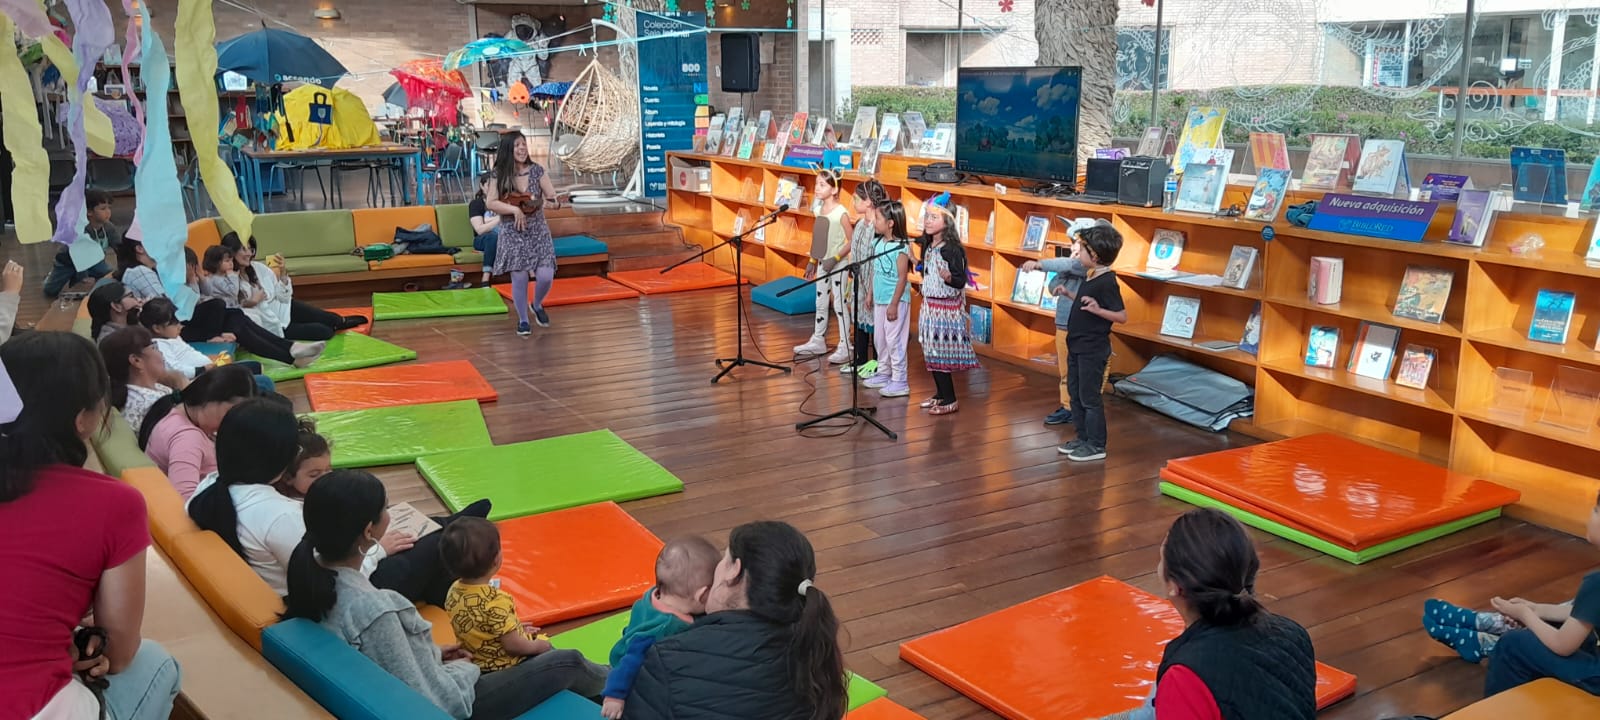 niños y niñas cantando junto a su docente frente a sus padres y cuidadores en medio del salón de una biblioteca.